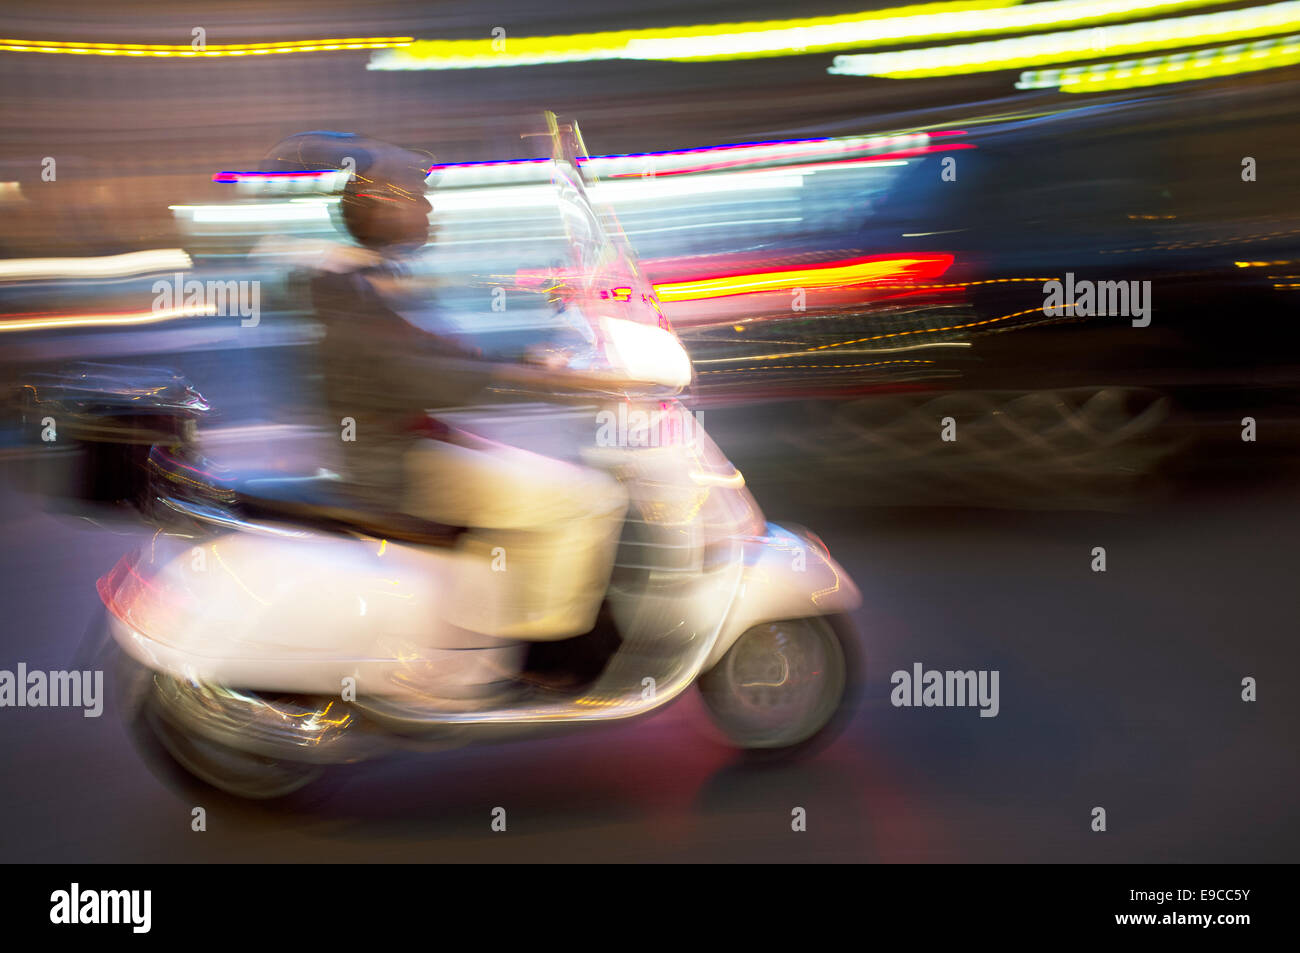 Imagen borrosa abstracta de un scooter de conducir de noche. Foto de stock